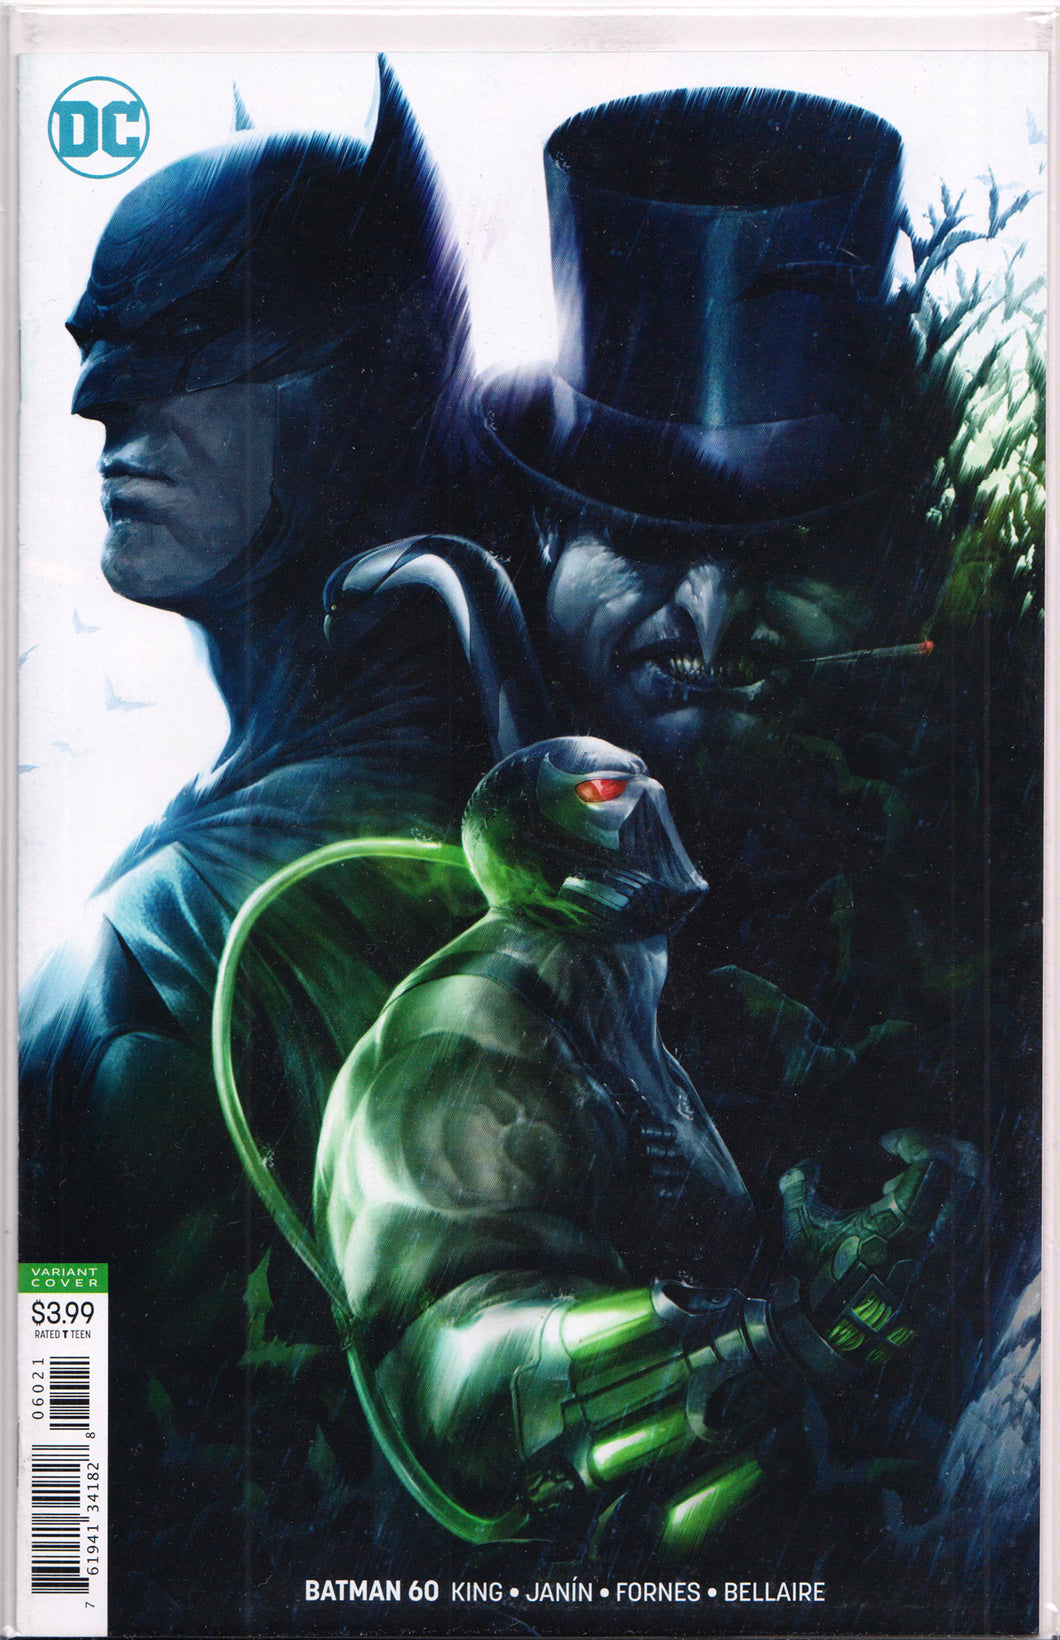 BATMAN #60 (FRANCESCO MATTINA VARIANT) COMIC BOOK ~ DC Comics